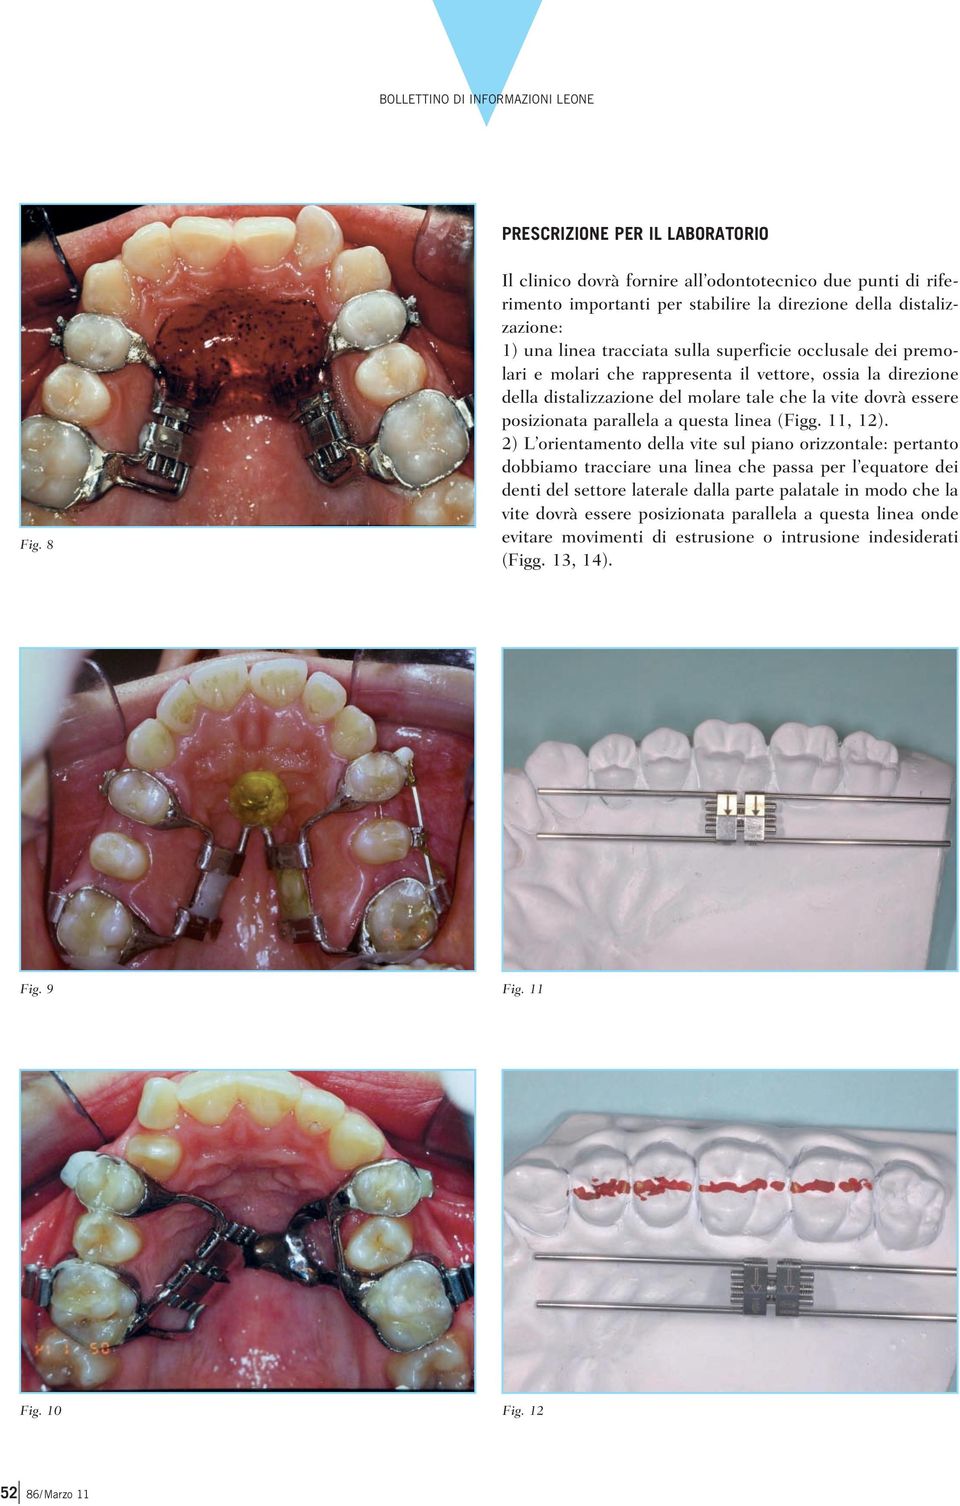 premolari e molari che rappresenta il vettore, ossia la direzione della distalizzazione del molare tale che la vite dovrà essere posizionata parallela a questa linea (Figg. 11, 12).